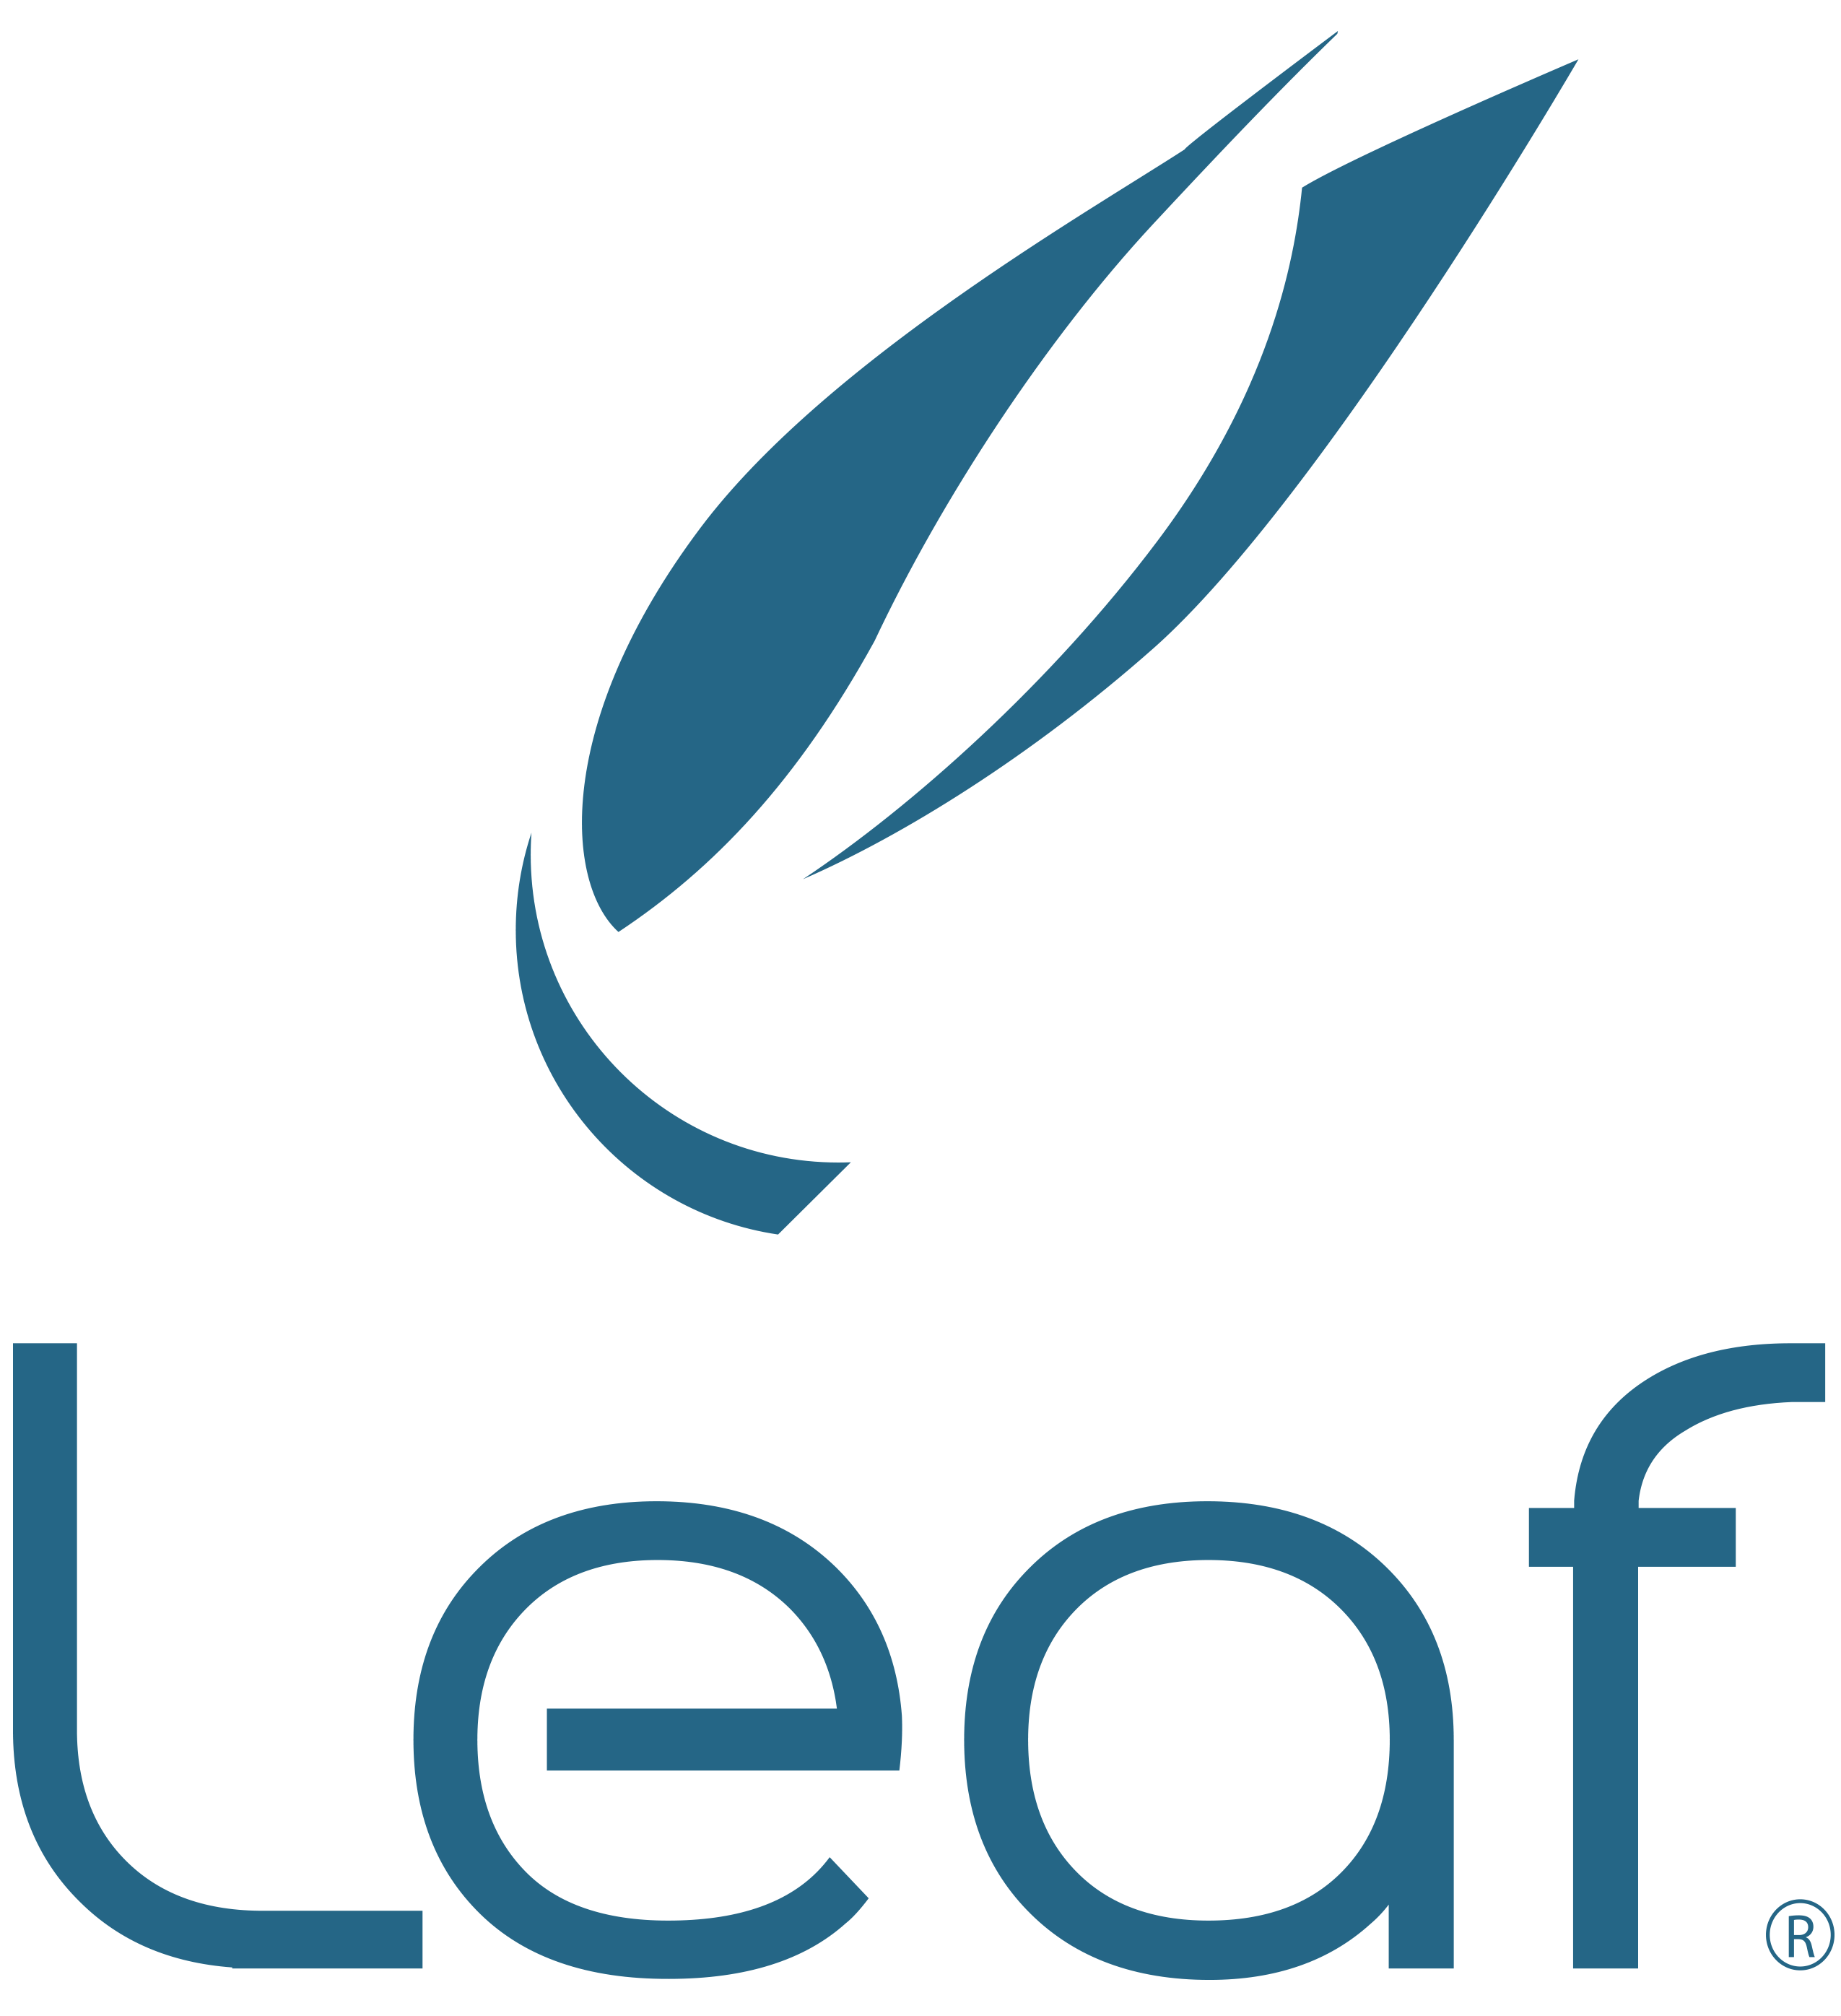 Leaf Software Solutions